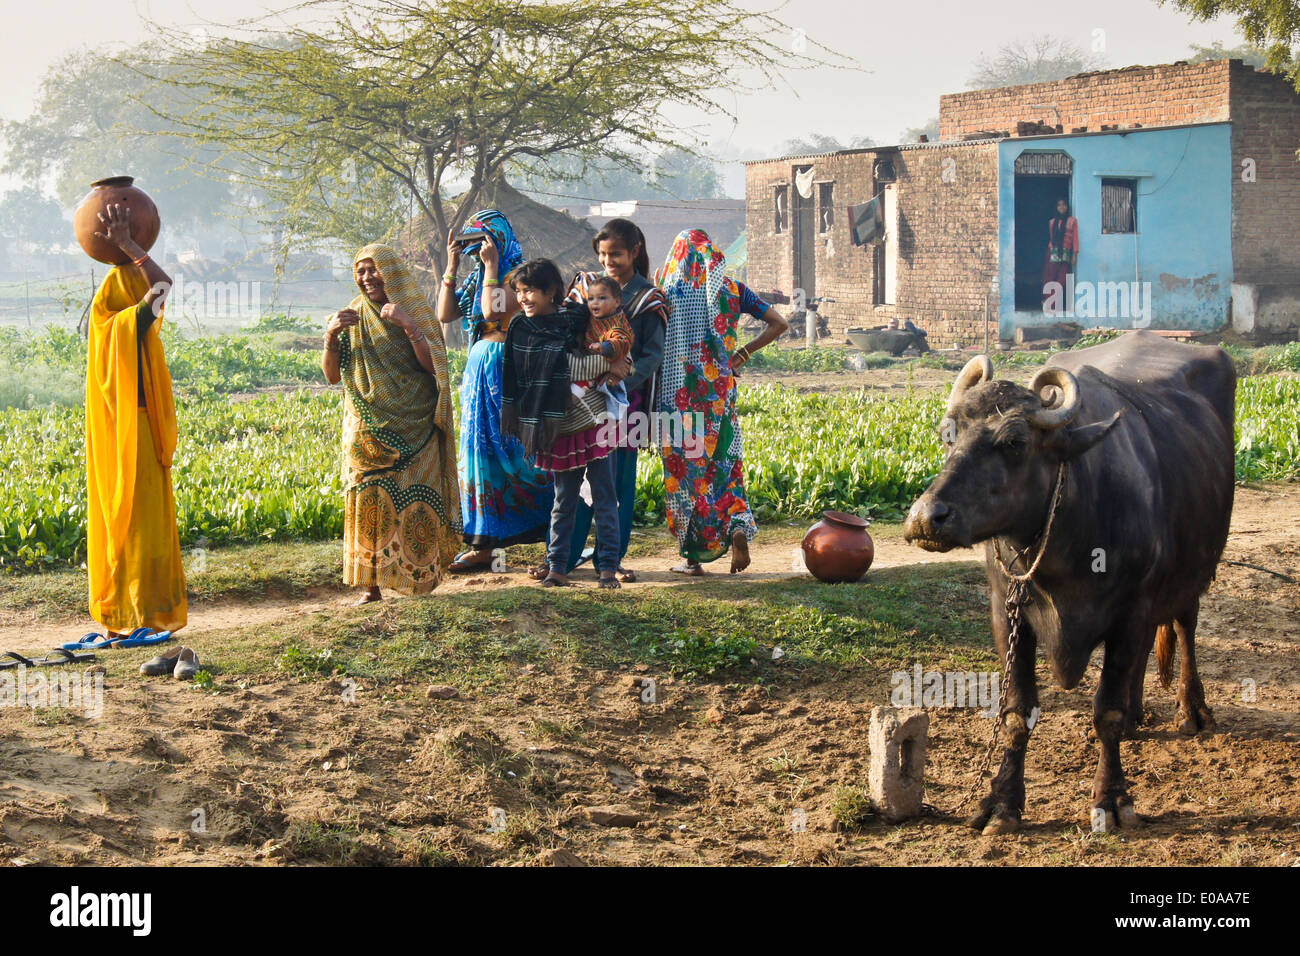 Les habitants du village et les buffles d'eau en face de la maison, Nagla Kachhpura, Agra, Inde Banque D'Images